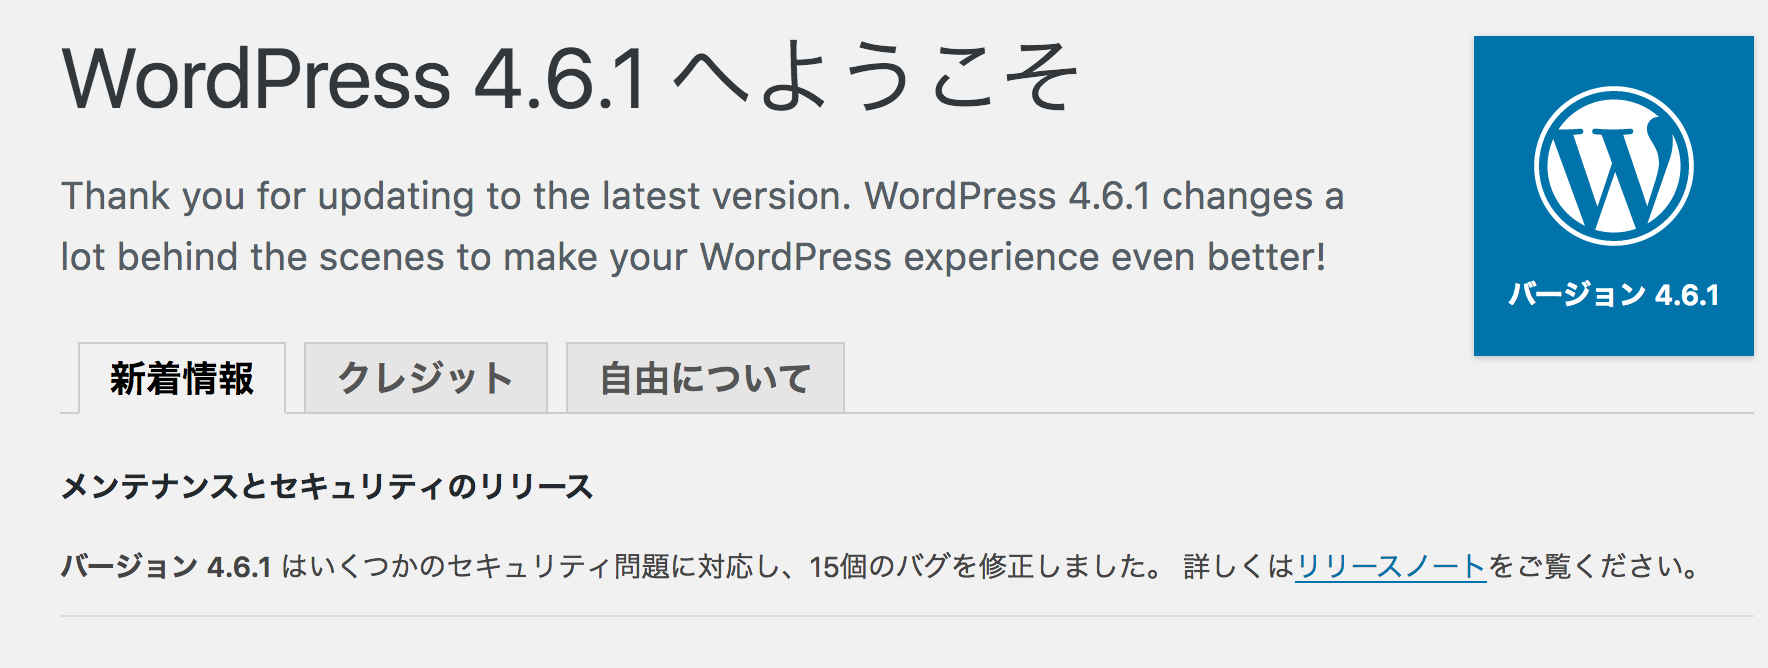 WordPress4.6.1へようこそ